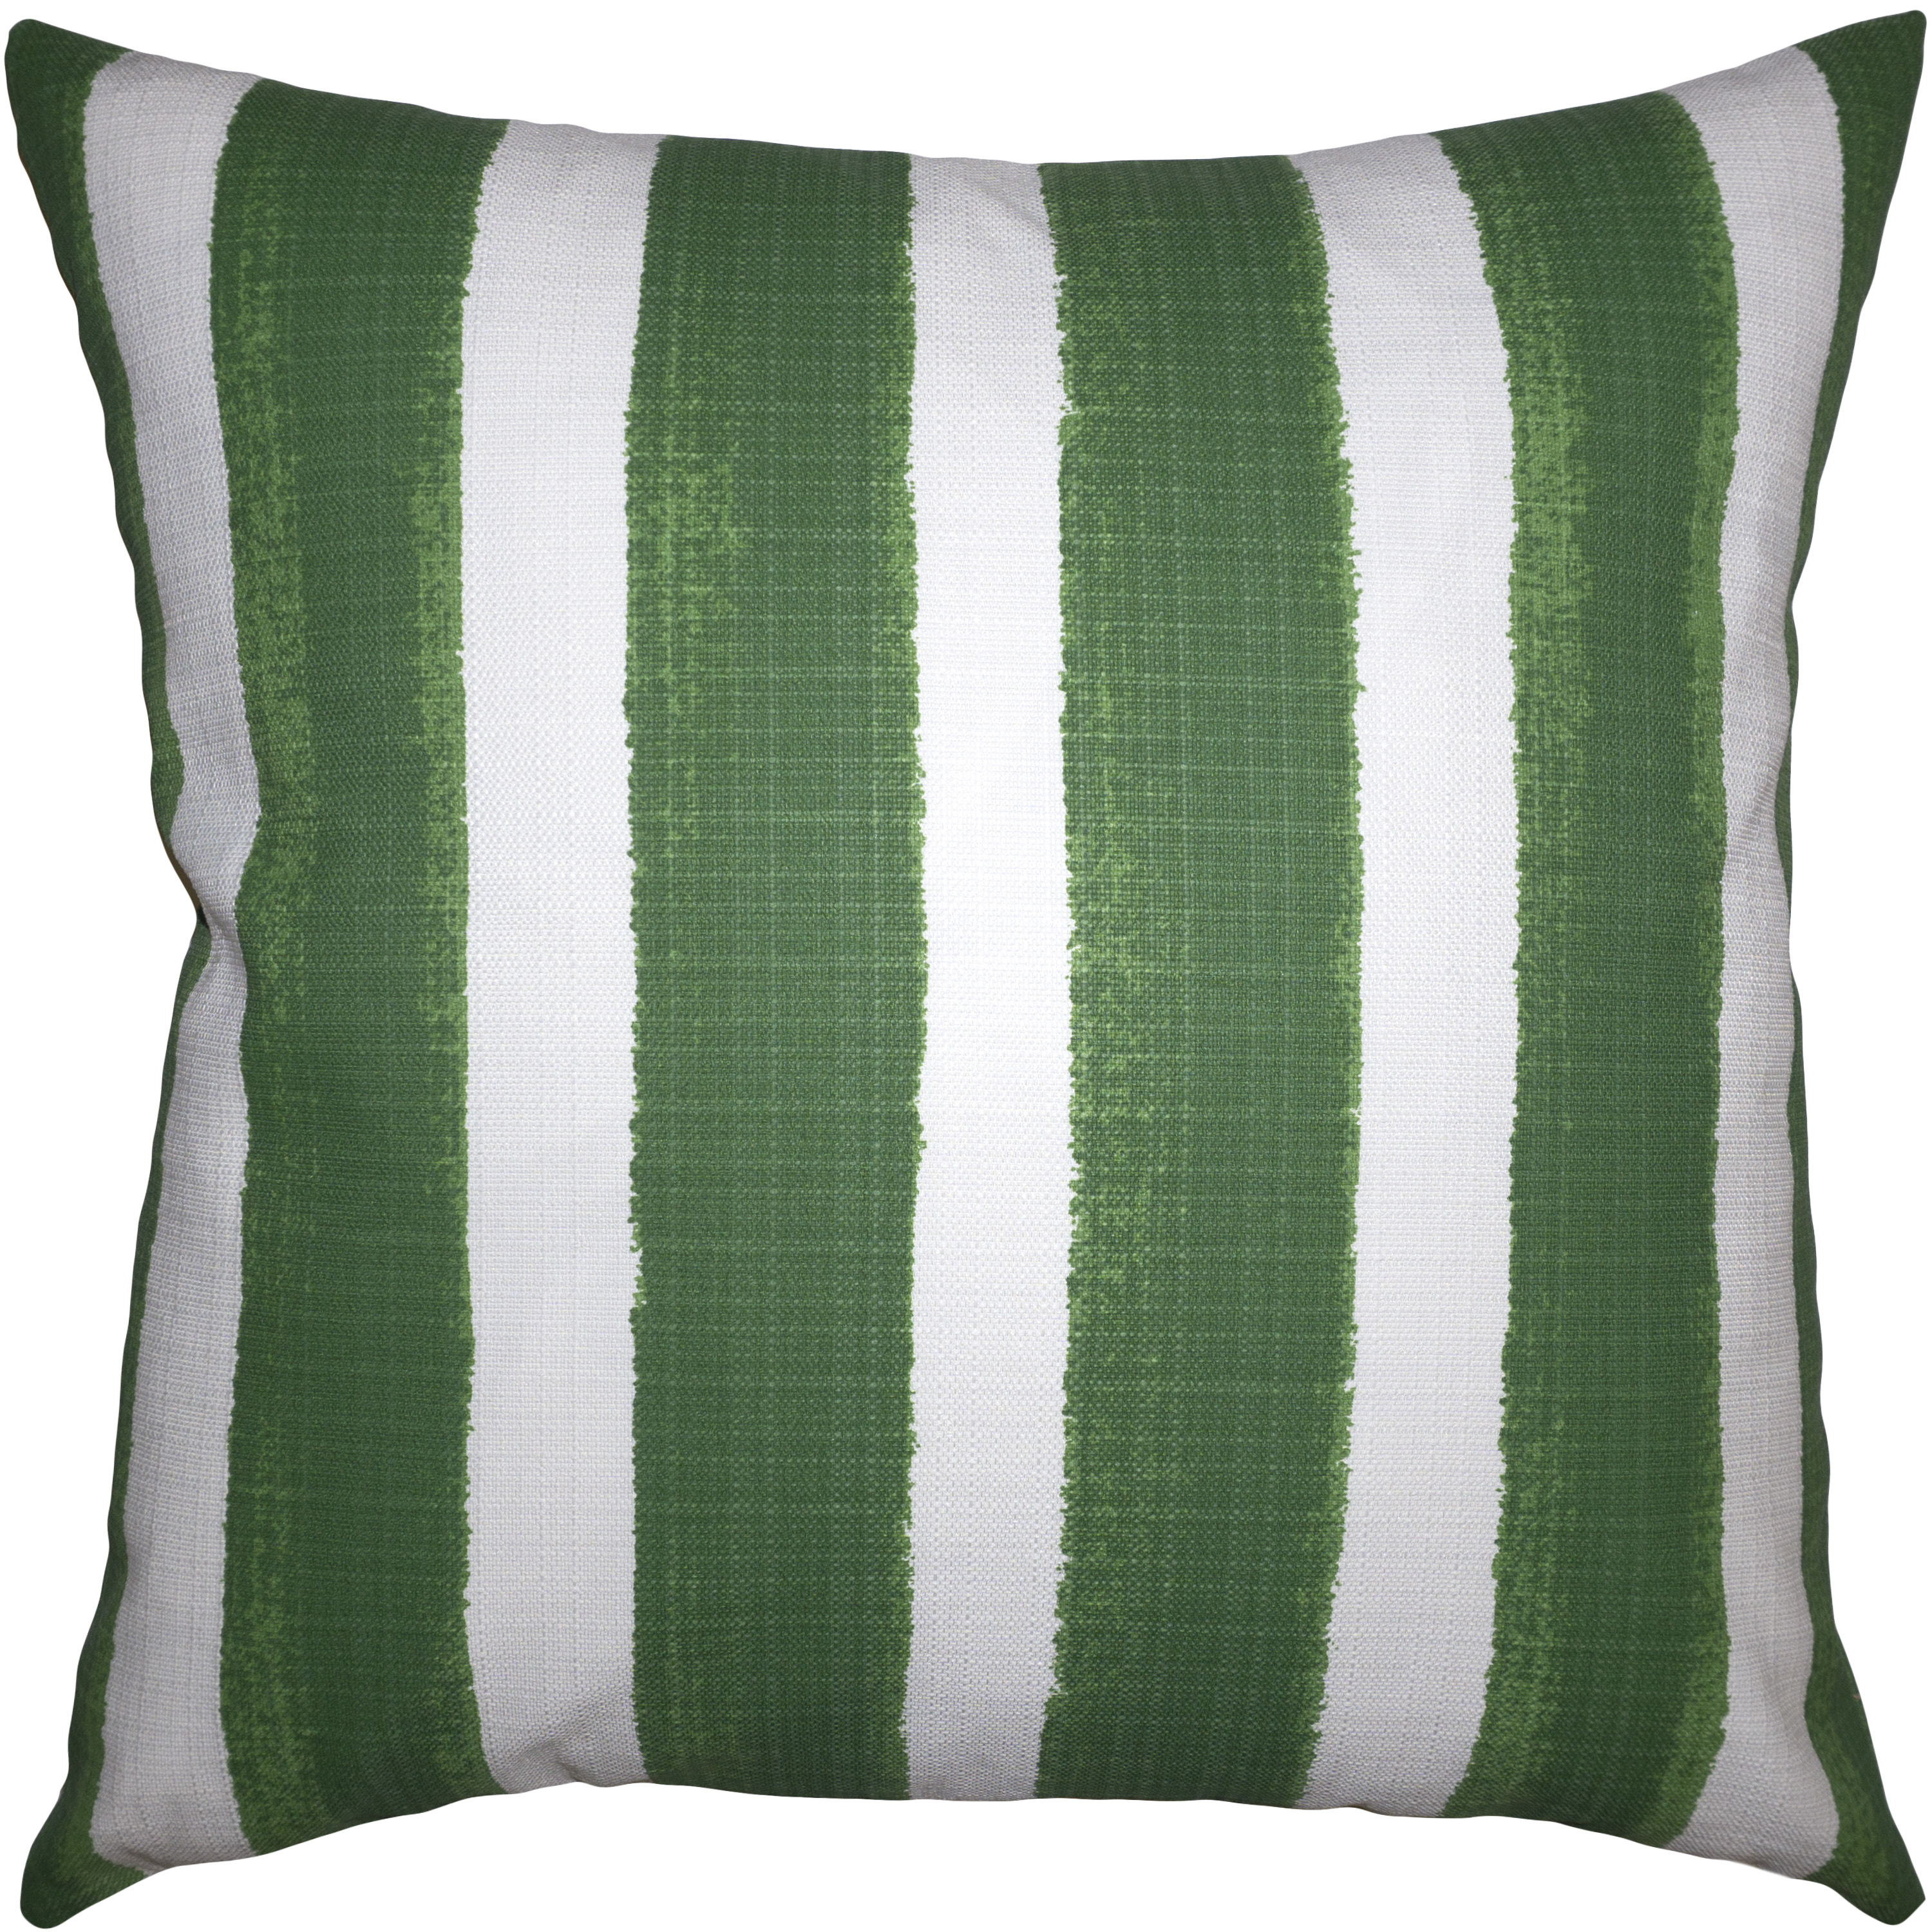 Nassau Green Outdoor Pillow